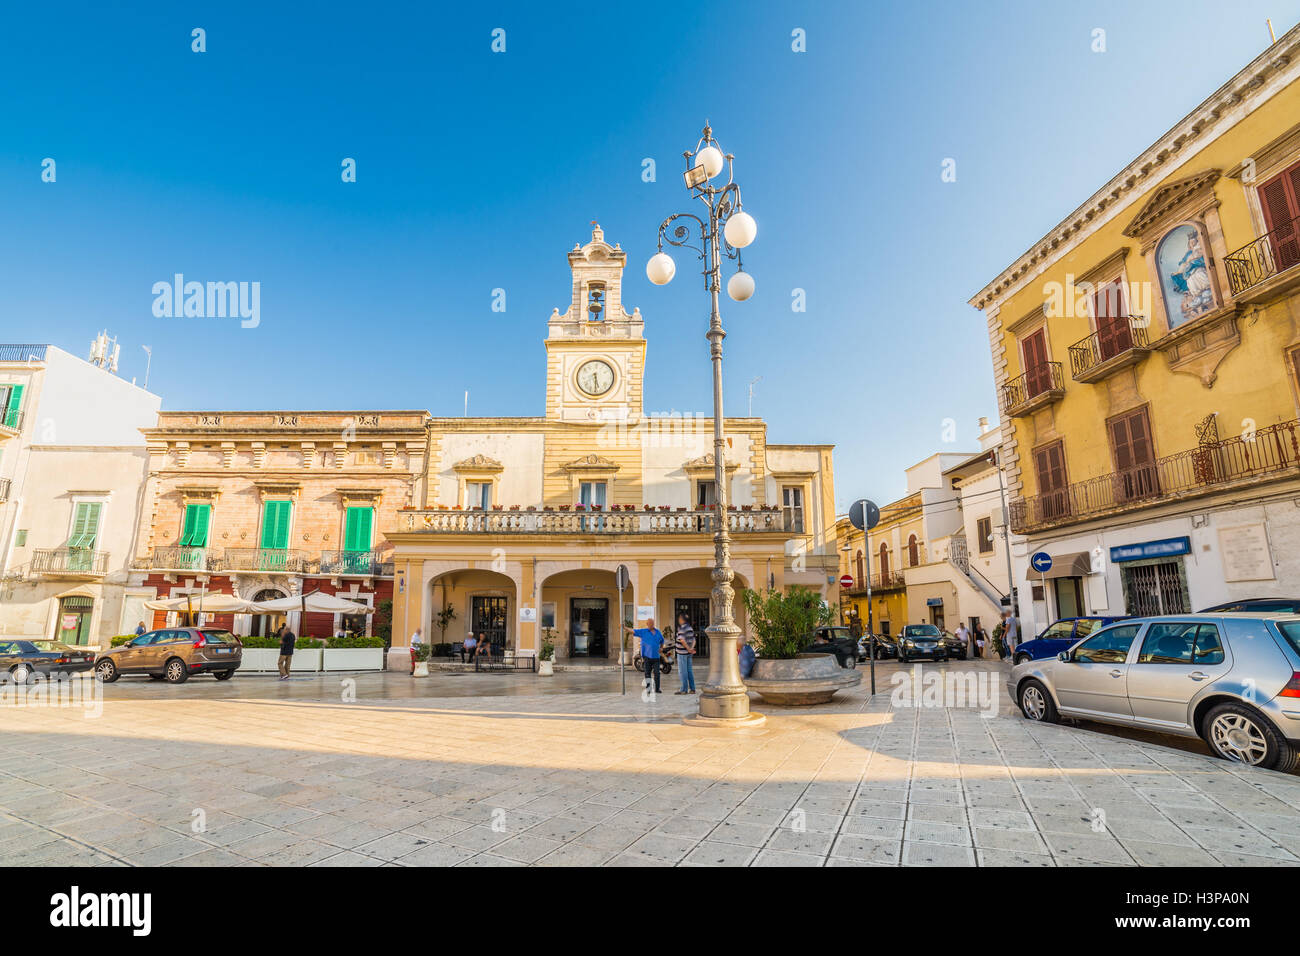 Piazza tipica del vecchio villaggio in Puglia, Italia Foto Stock